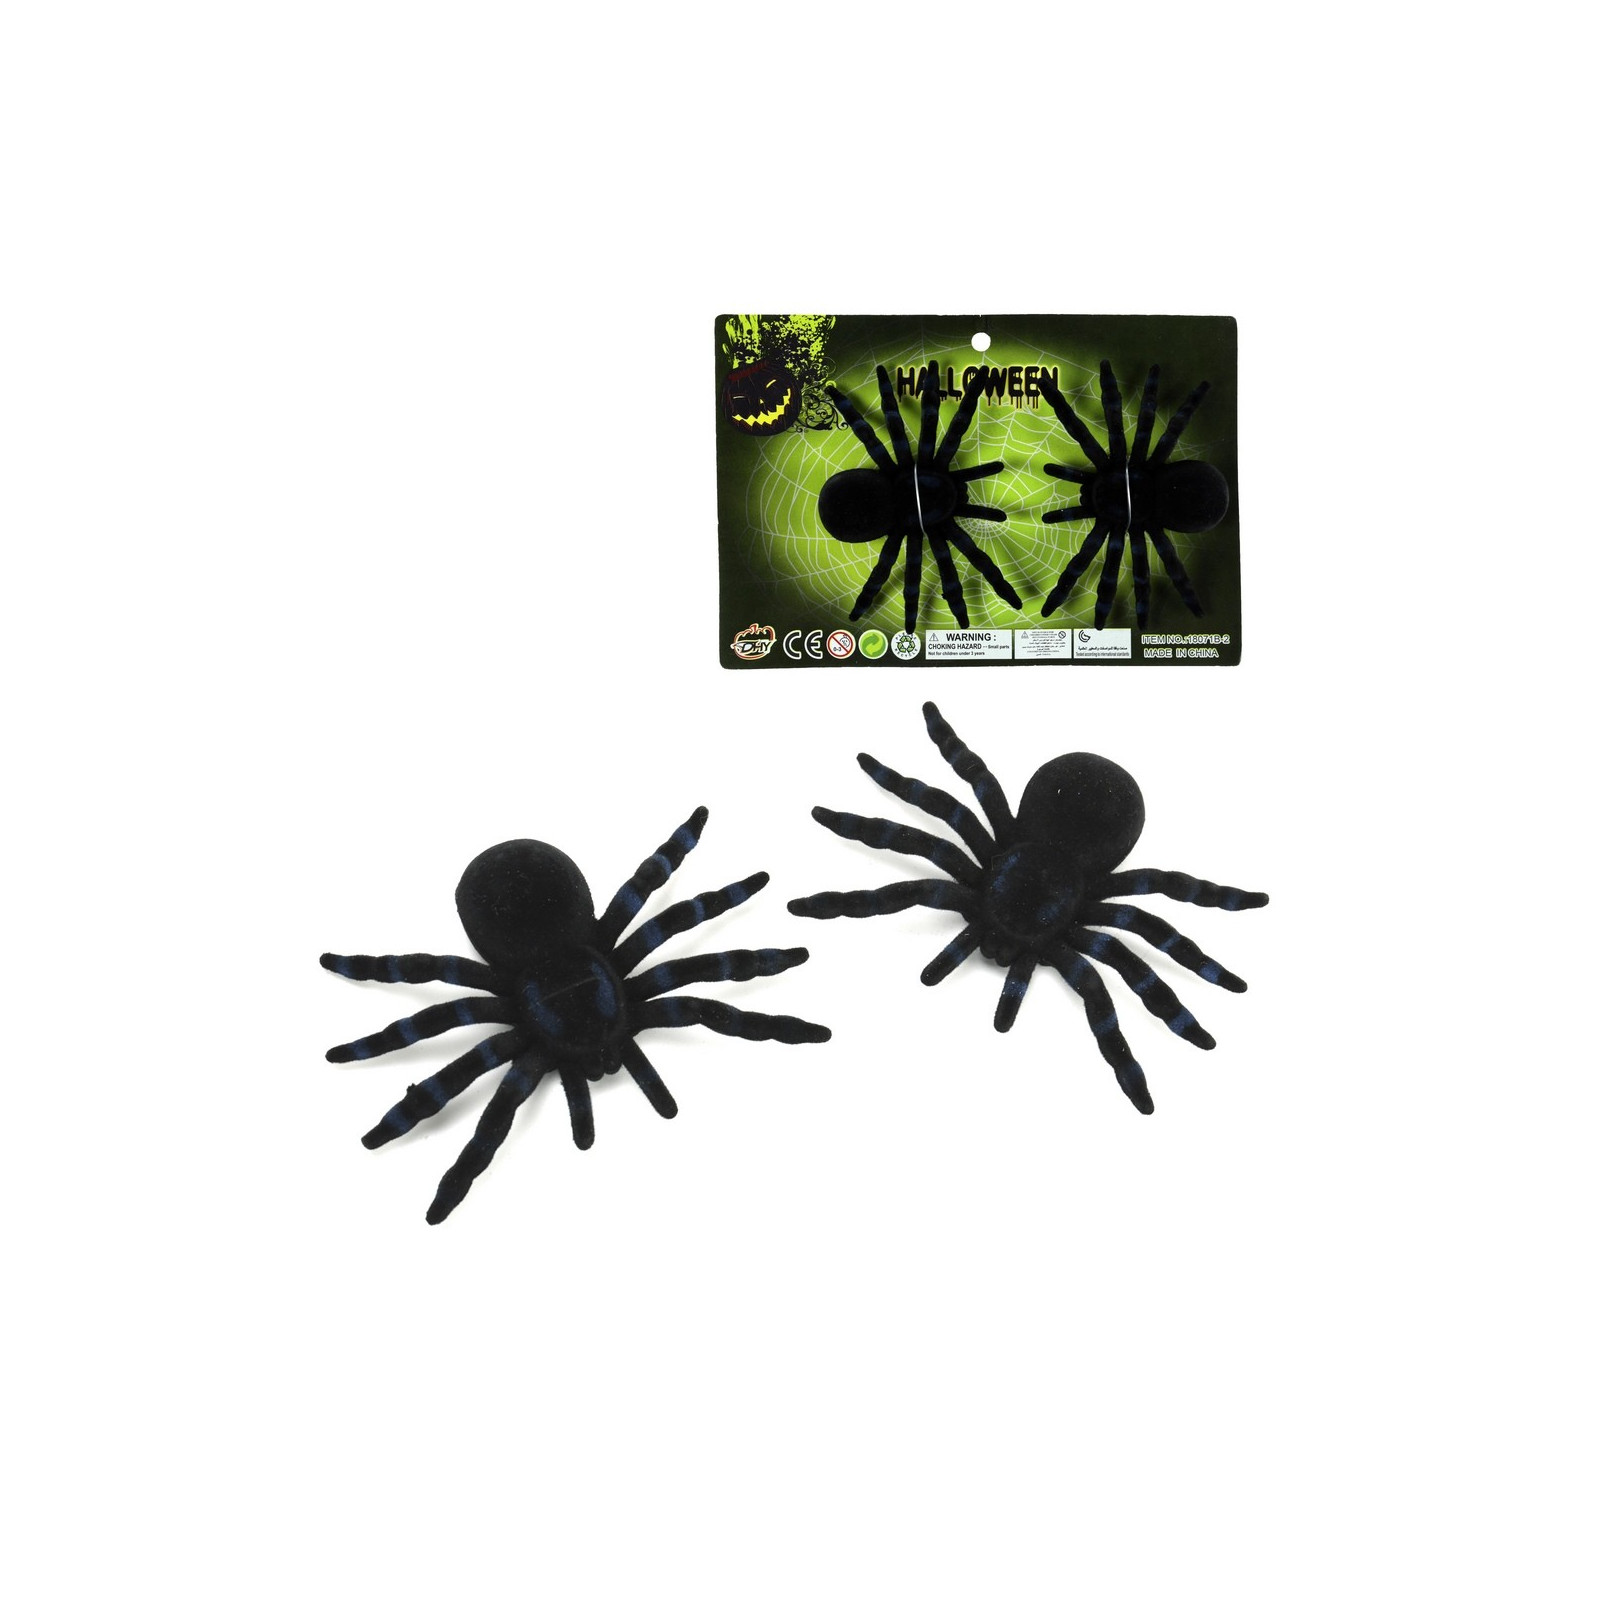 S 2 araignée plastique floquée noire 10 x 7 cm